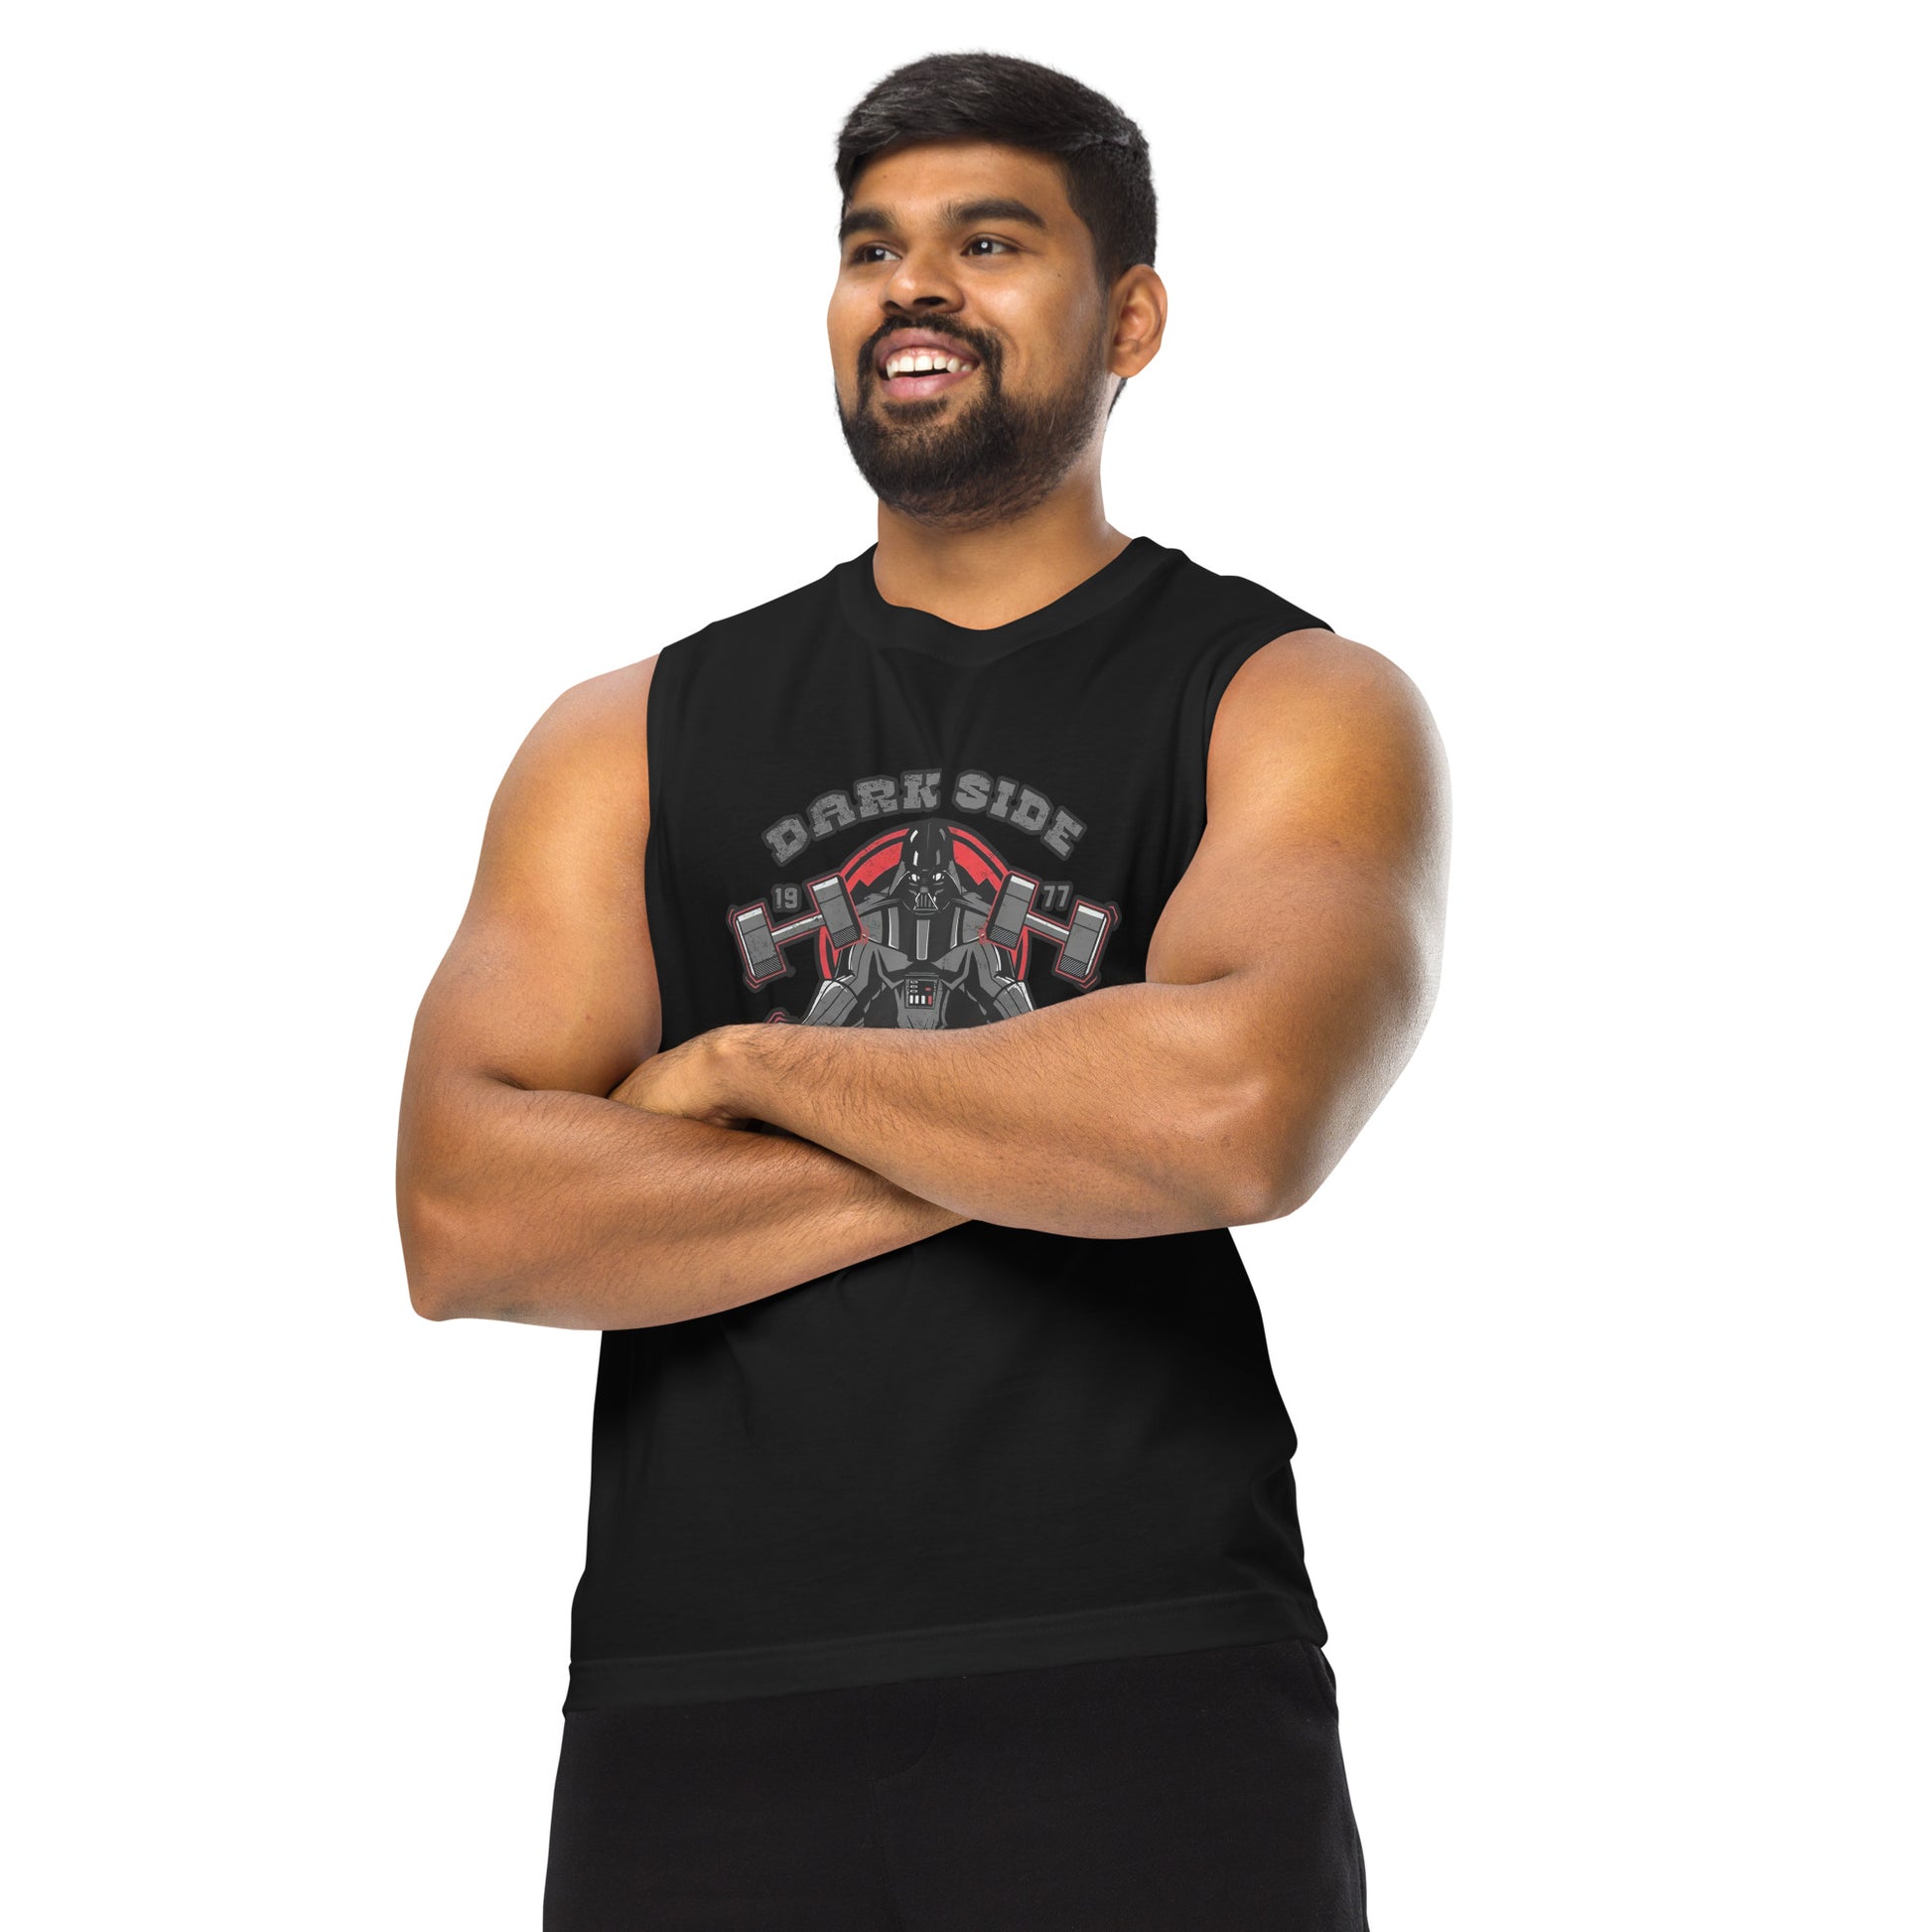 Camiseta sin mangas perfecta para entrenar, Camiseta Dark Side Gym comprala en línea y experimenta el mejor servicio al cliente. envíos locales.